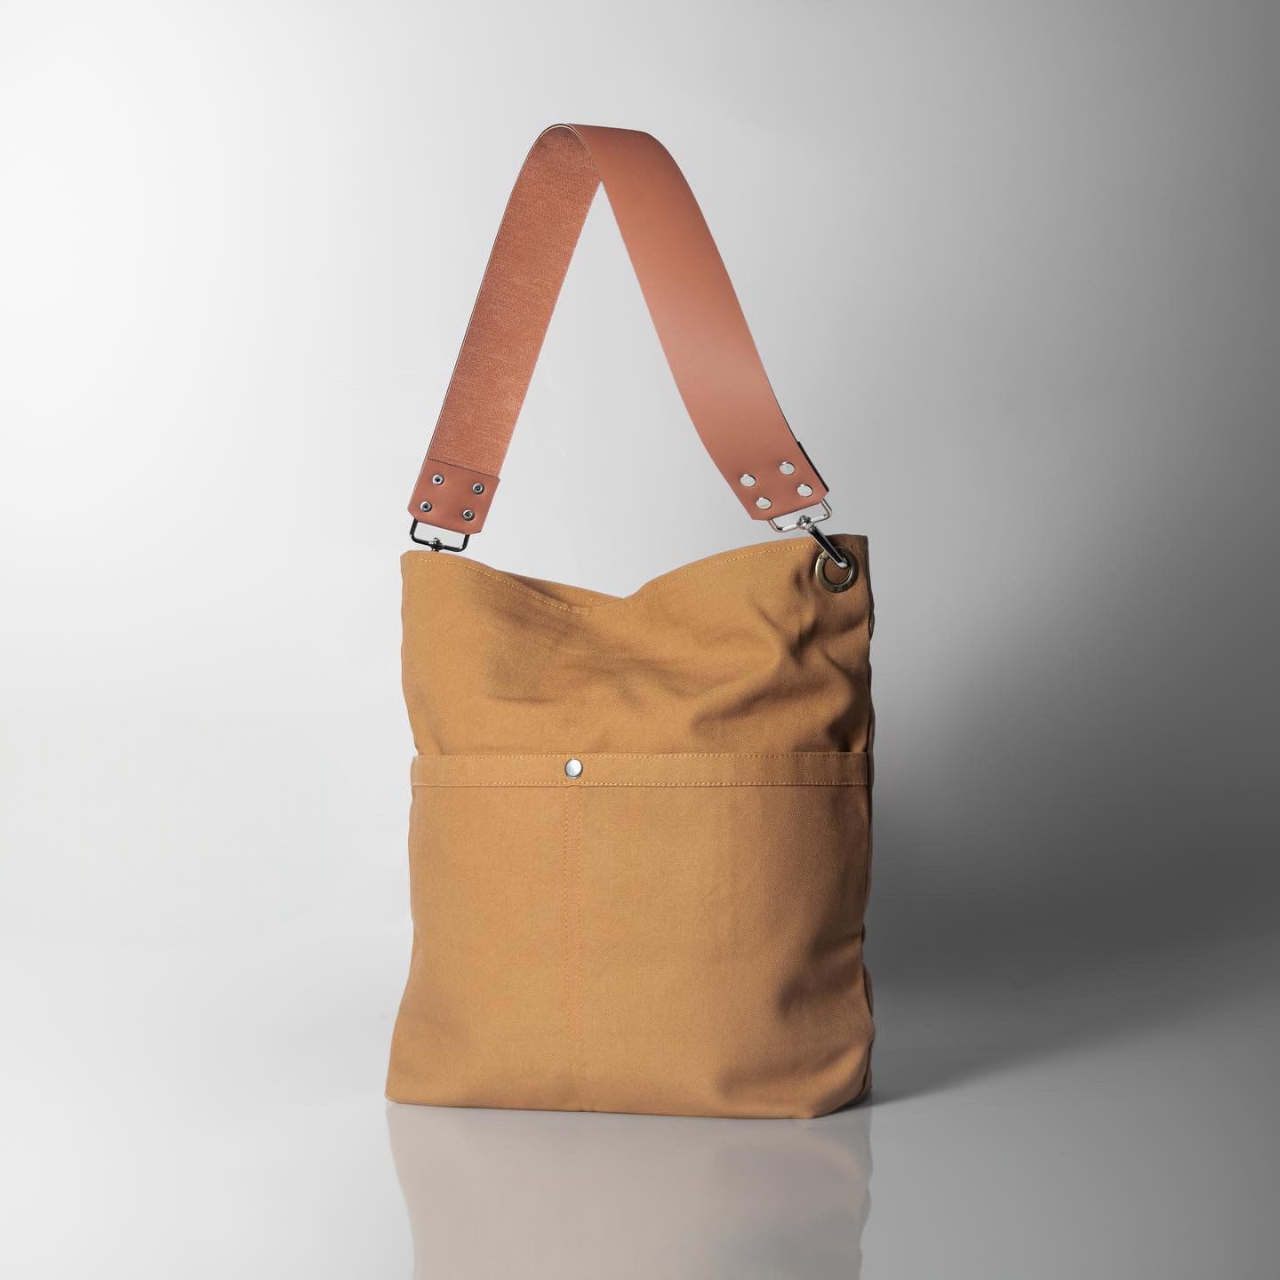 New Design Clothing Bag For Women